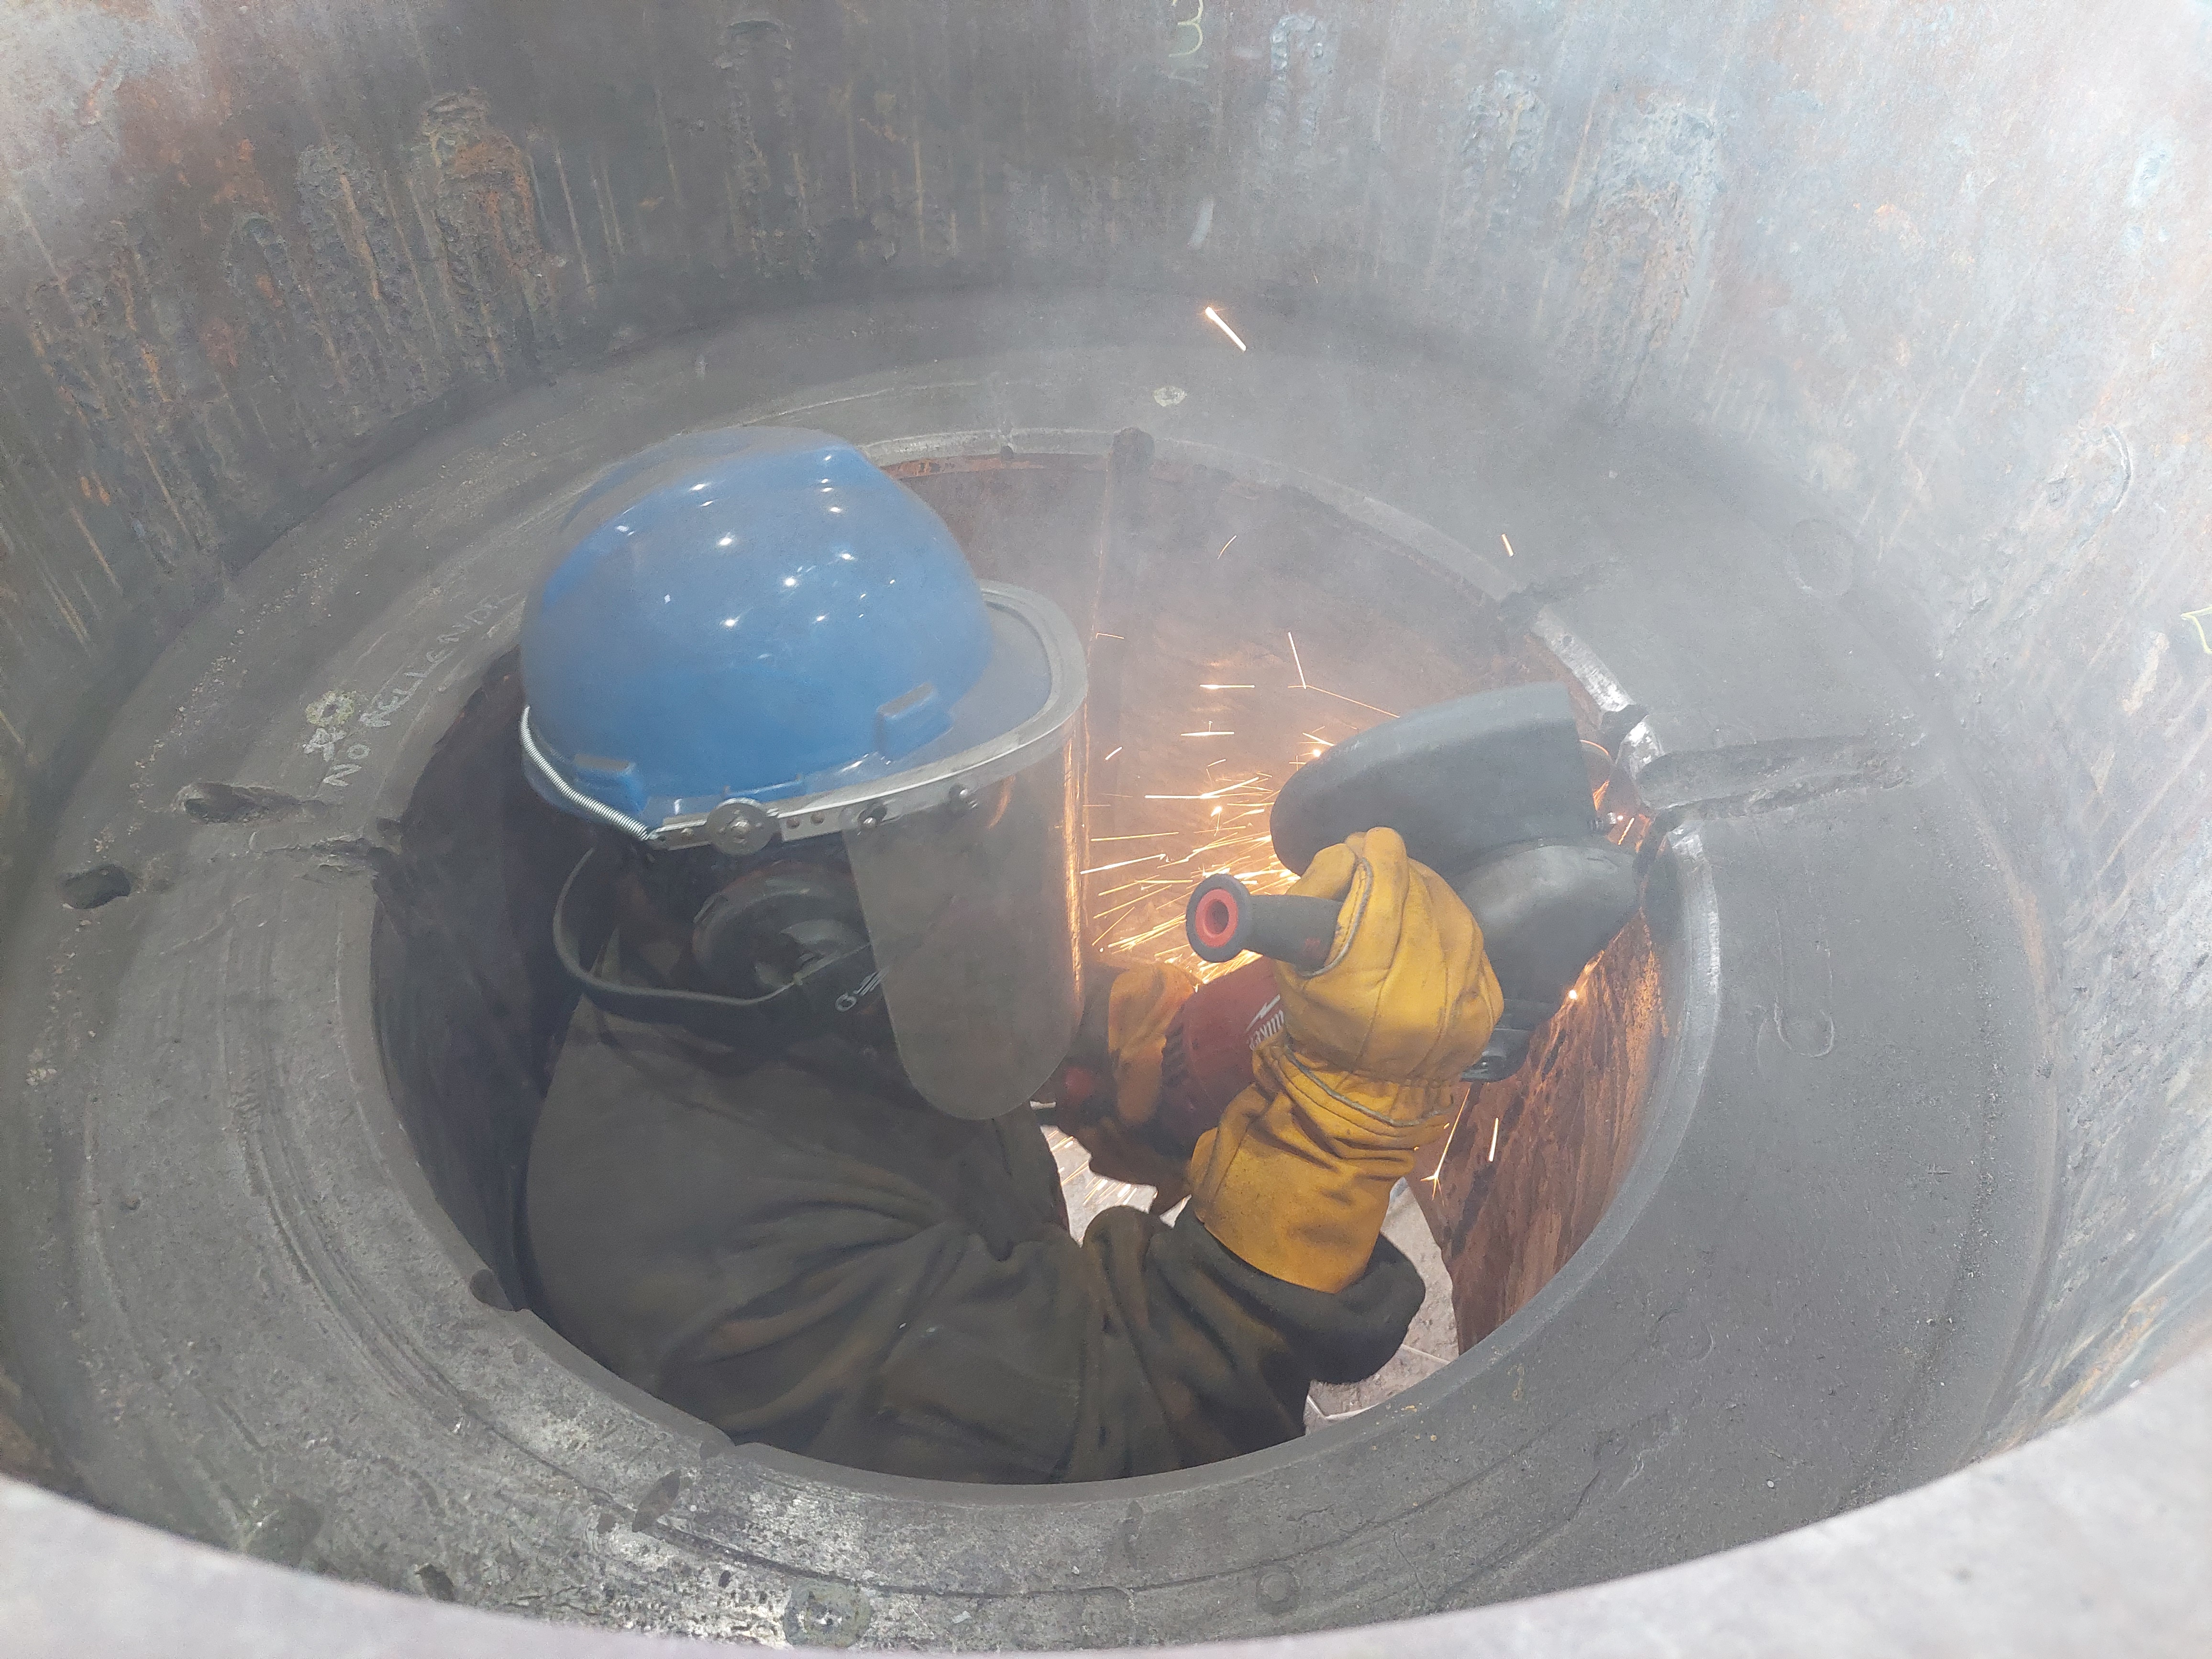 Metso fortalece presencia y servicios en minería de Surinam